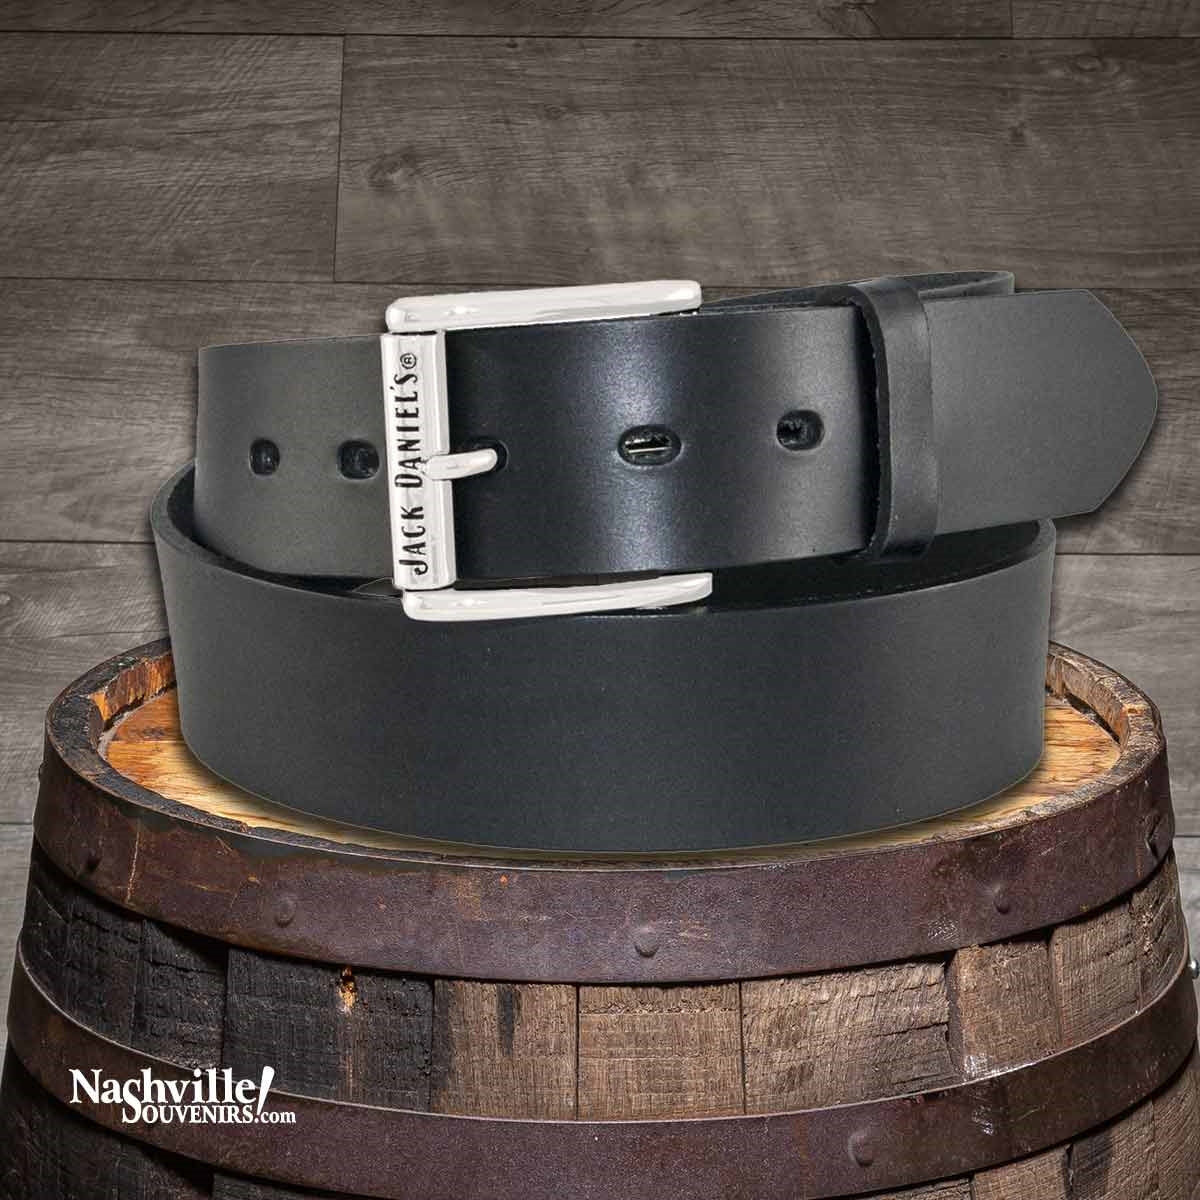 Korea kromme Literatuur Jack Daniel's Belts | Buckles | NashvilleSouvenirs.com